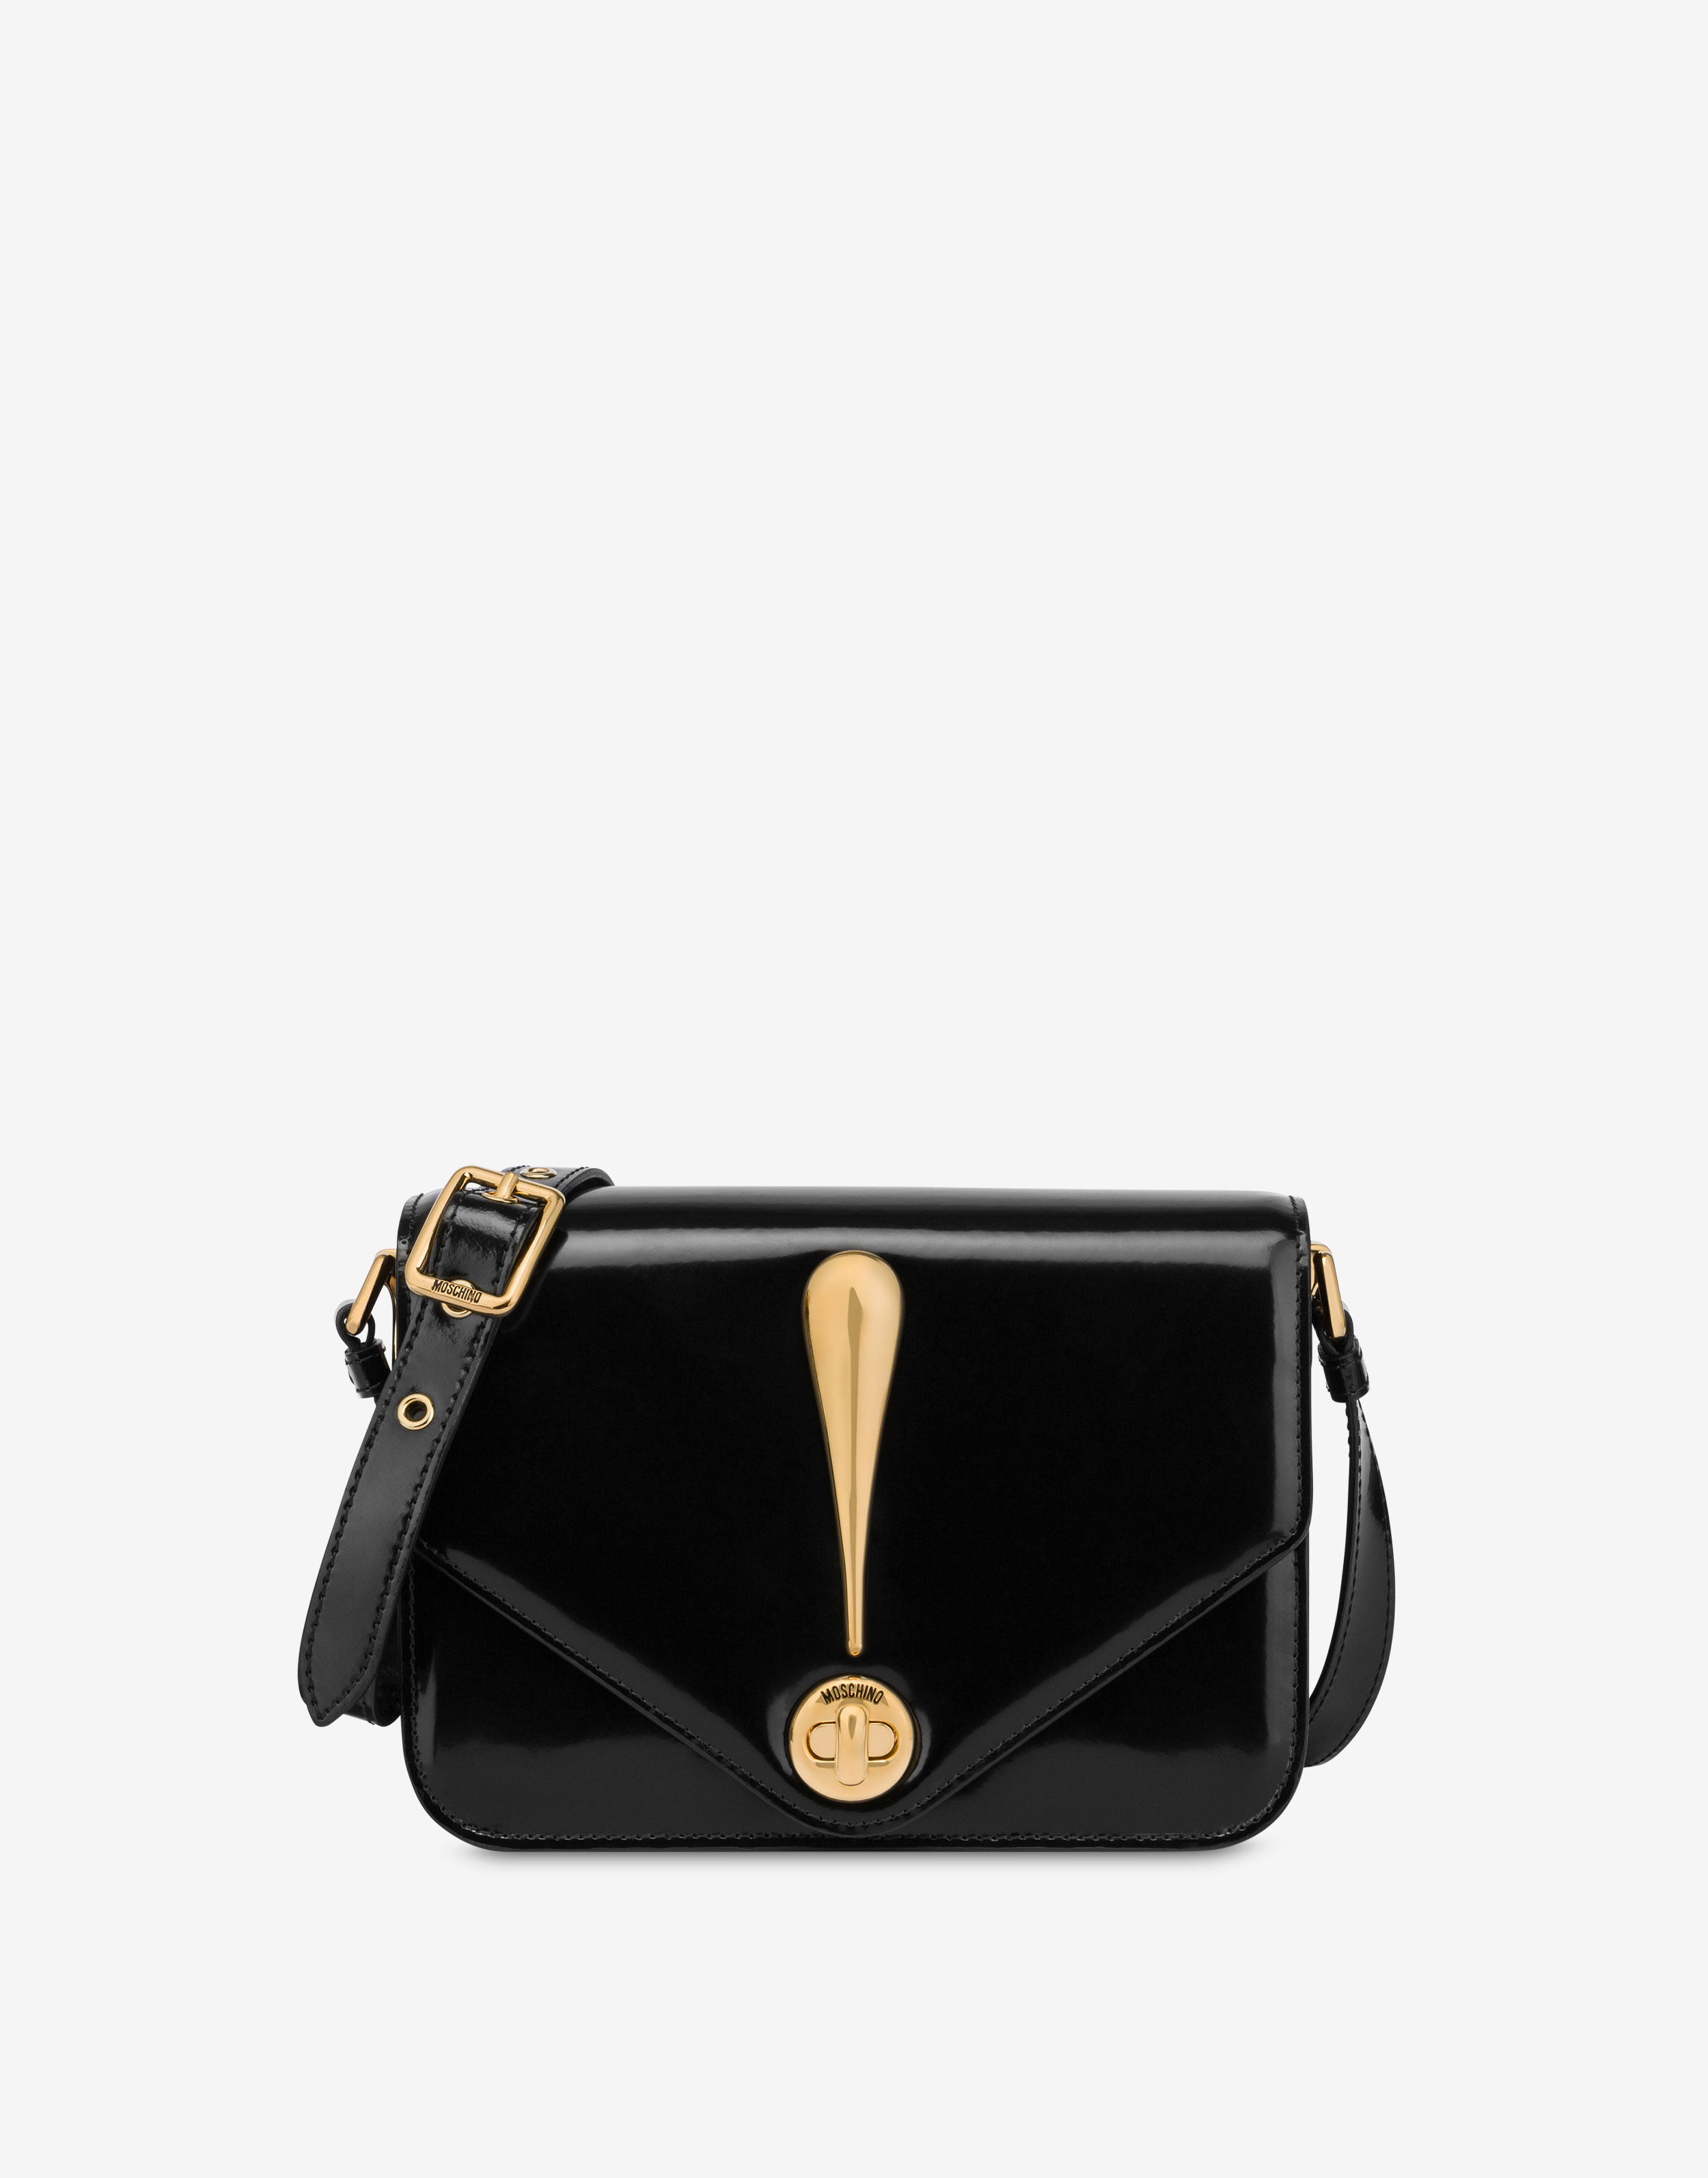 Handbags Moschino, Style code: 7530-8002-4555